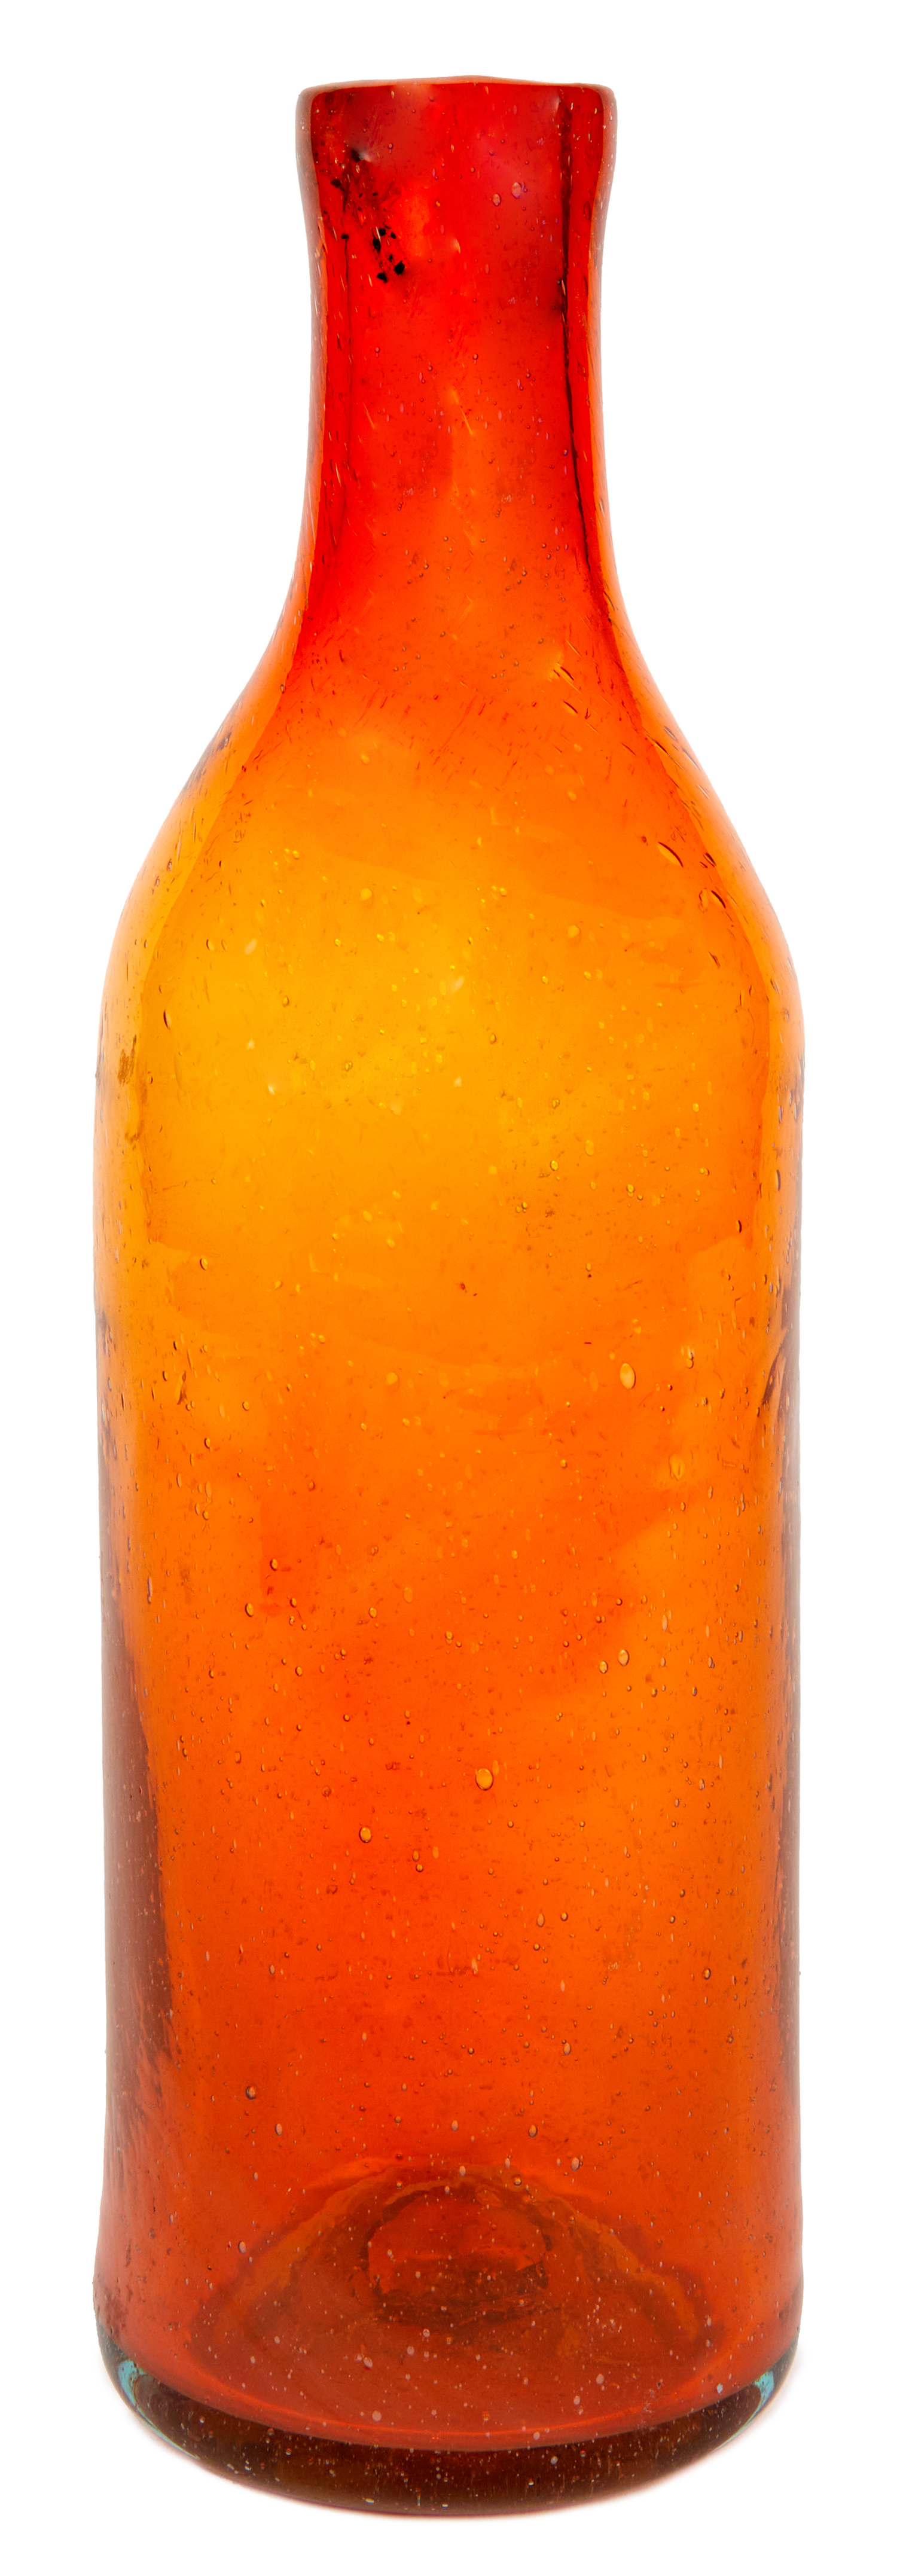 1900 gramos 1,9 kilos mercurio liquido en botella antigua sellada antiguo  tarro frasco cristal